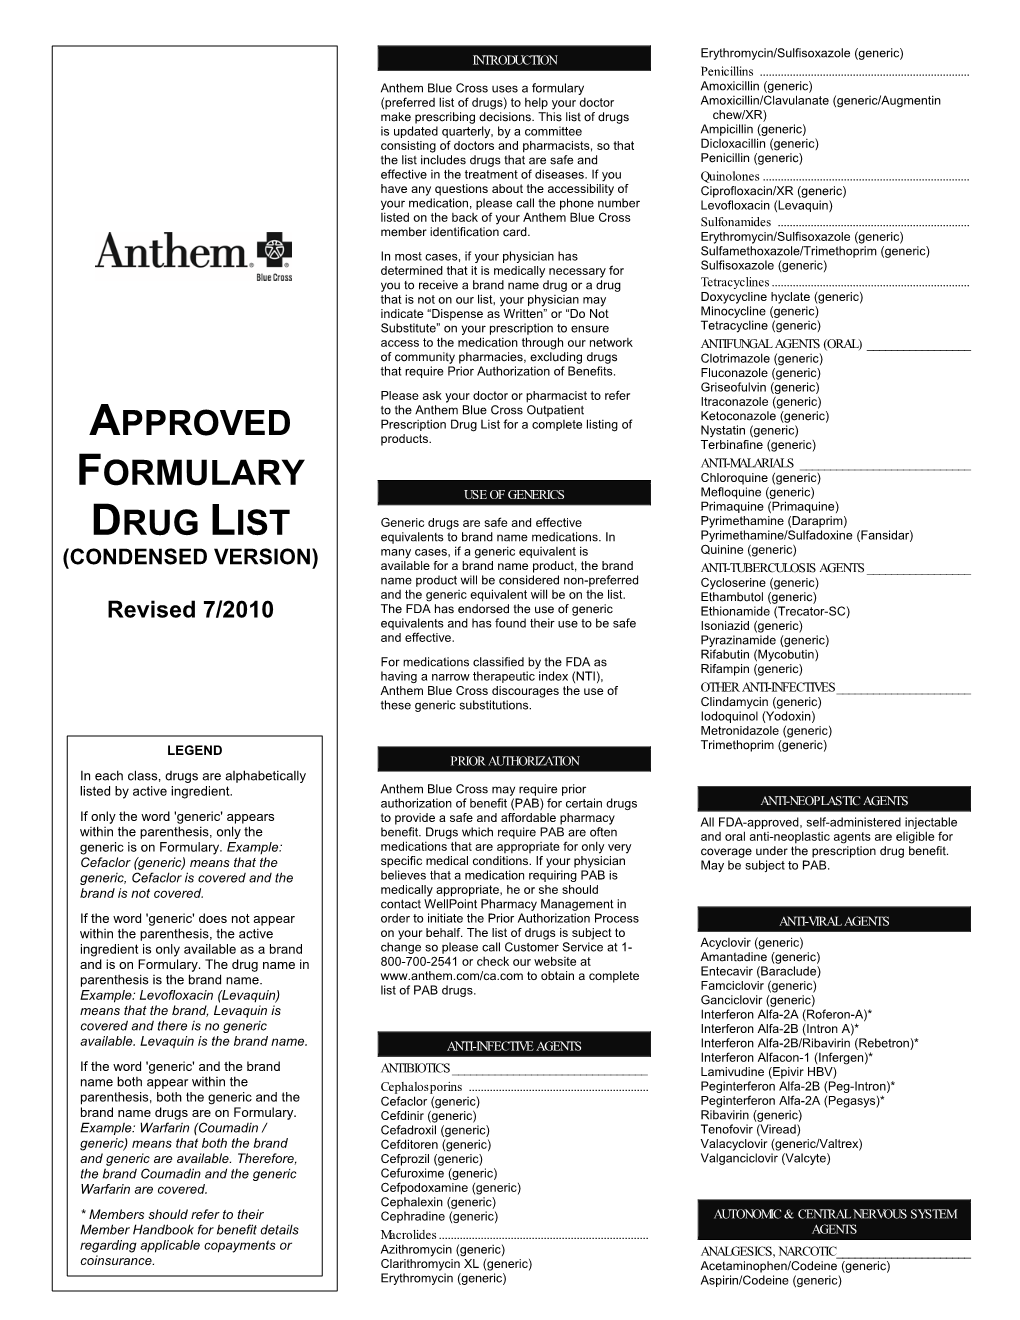 Approved Formulary Drug List